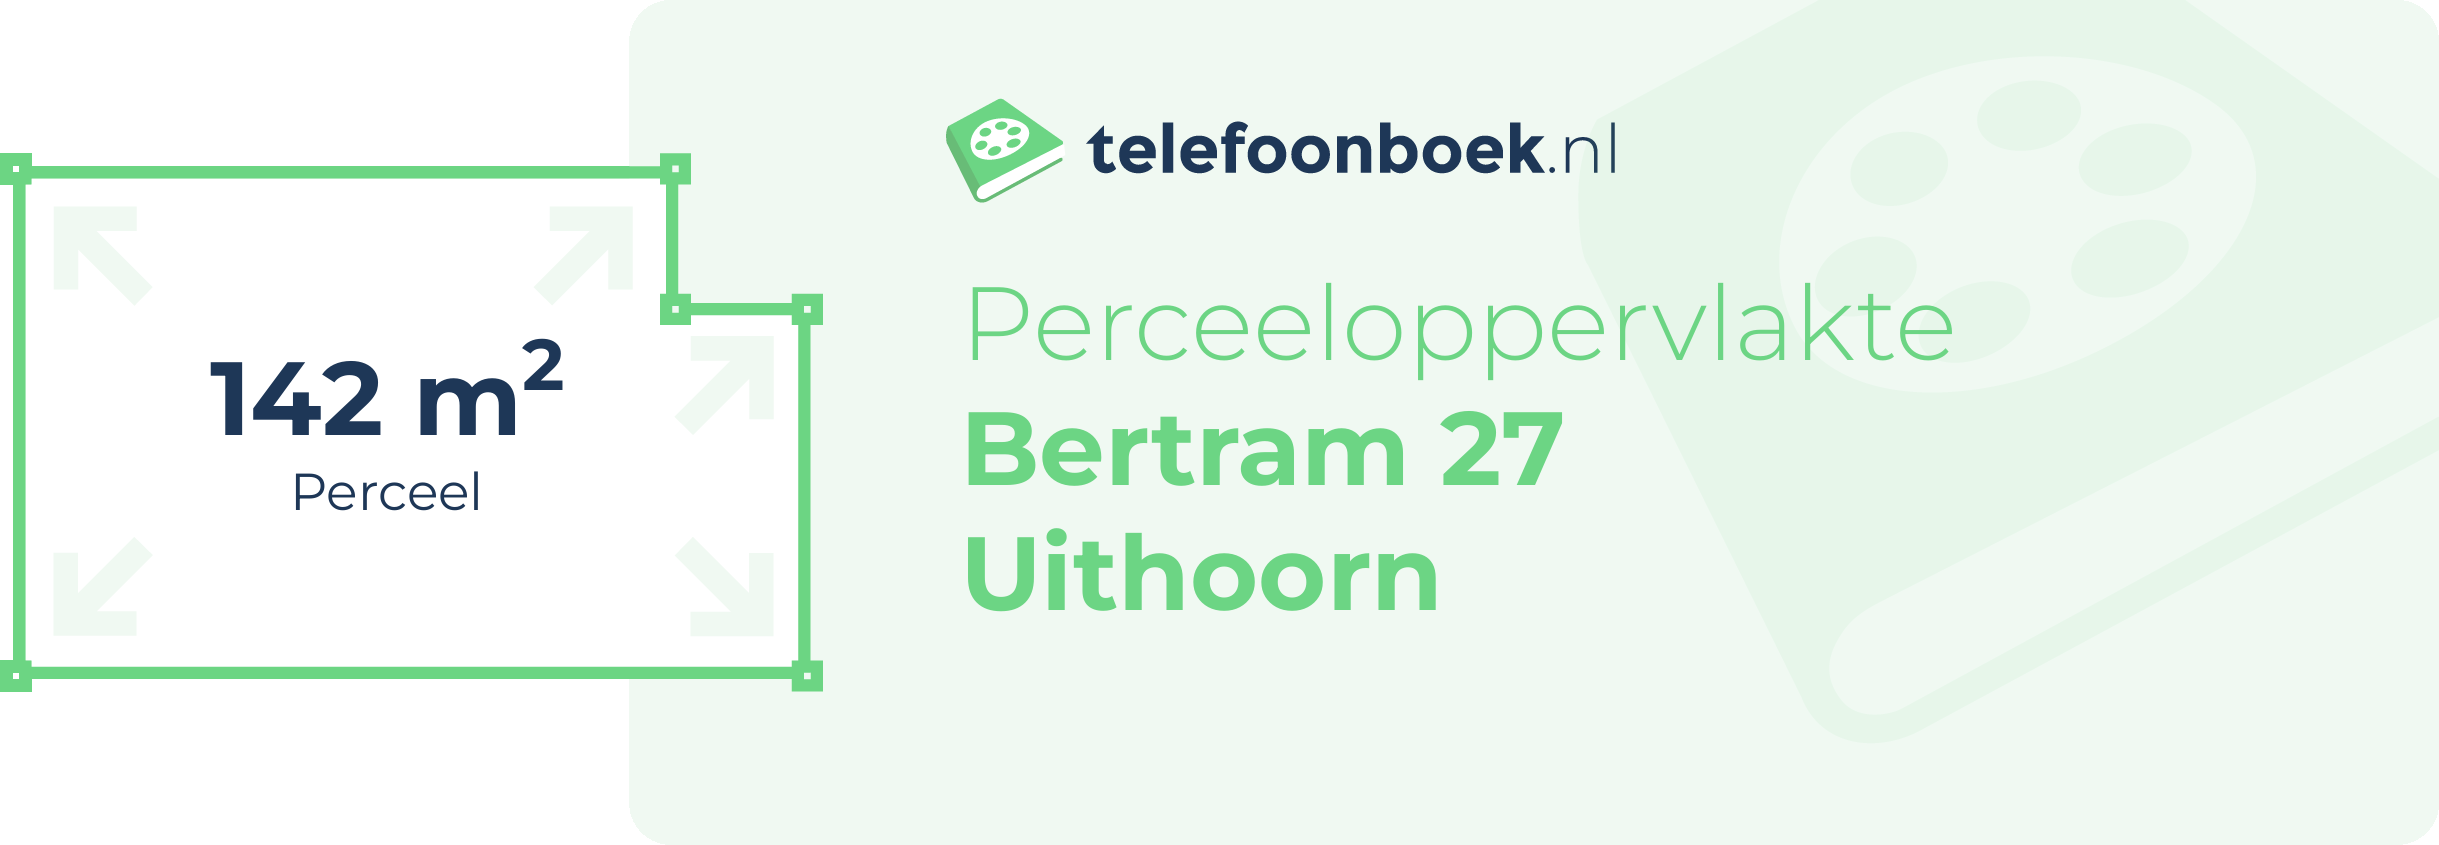 Perceeloppervlakte Bertram 27 Uithoorn